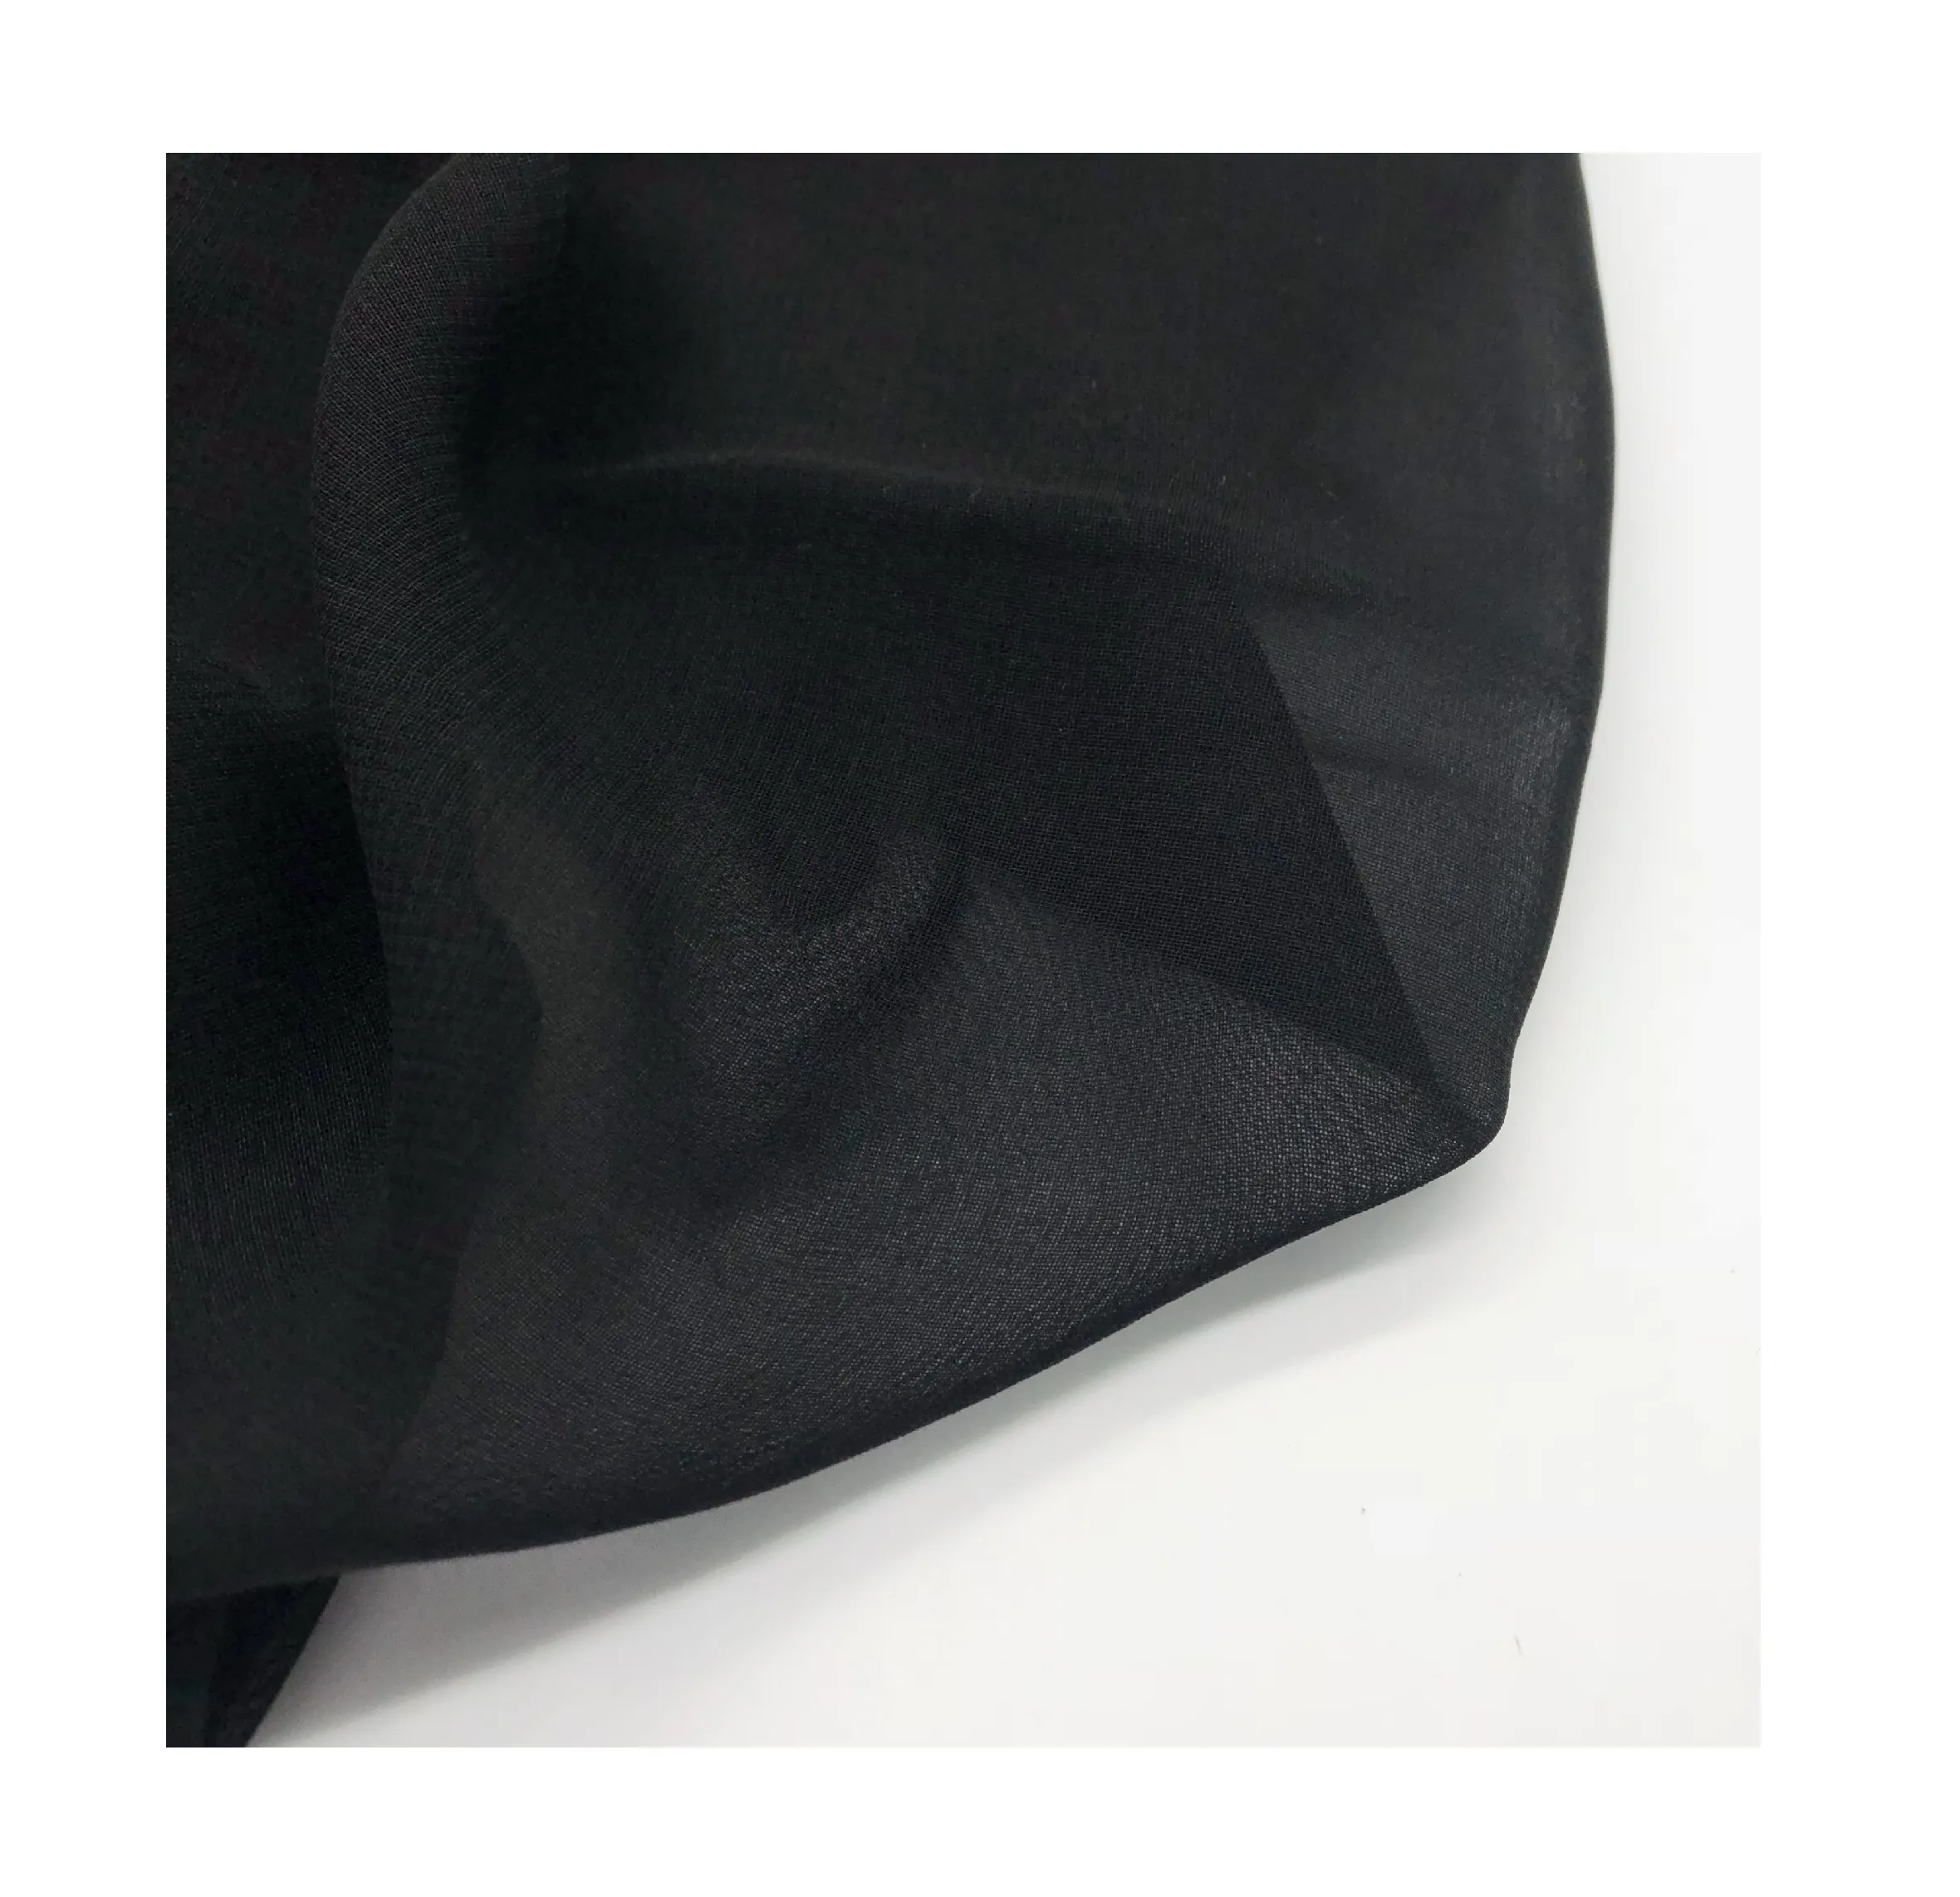 Dubai Muslim lembut 100% poliester sifon hitam Turki gaun Abaya Nida Zoom kain krep kain